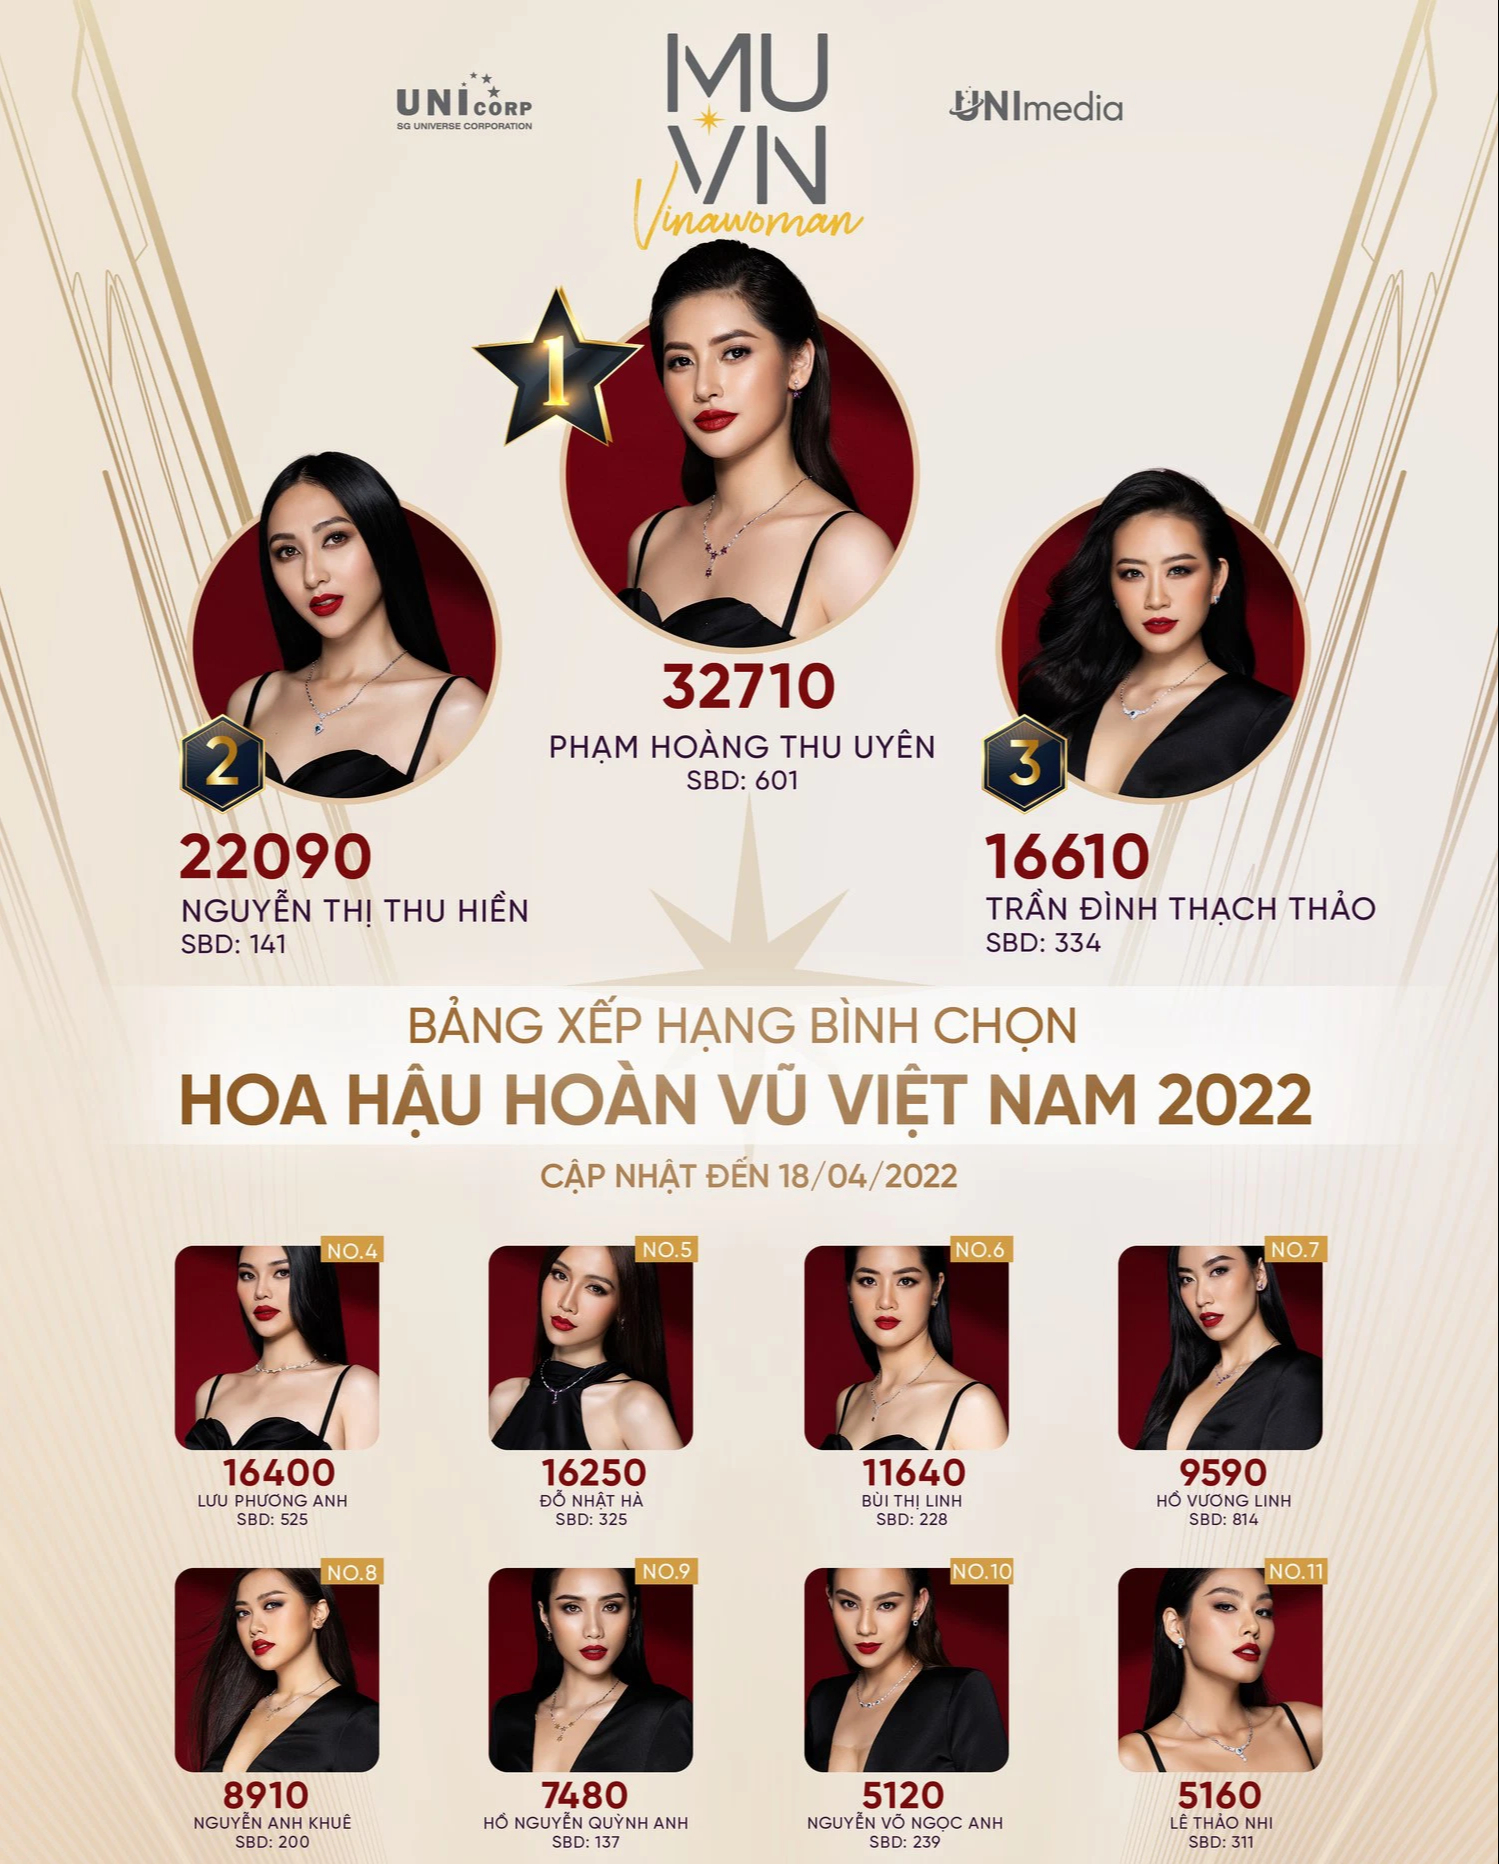 Cập nhật BXH bầu chọn Miss Universe Vietnam: Hương Ly, Ngọc Châu và dàn thí sinh 5000 máu mất hút, Nhật Hà có vé vàng thì sao? - Ảnh 2.